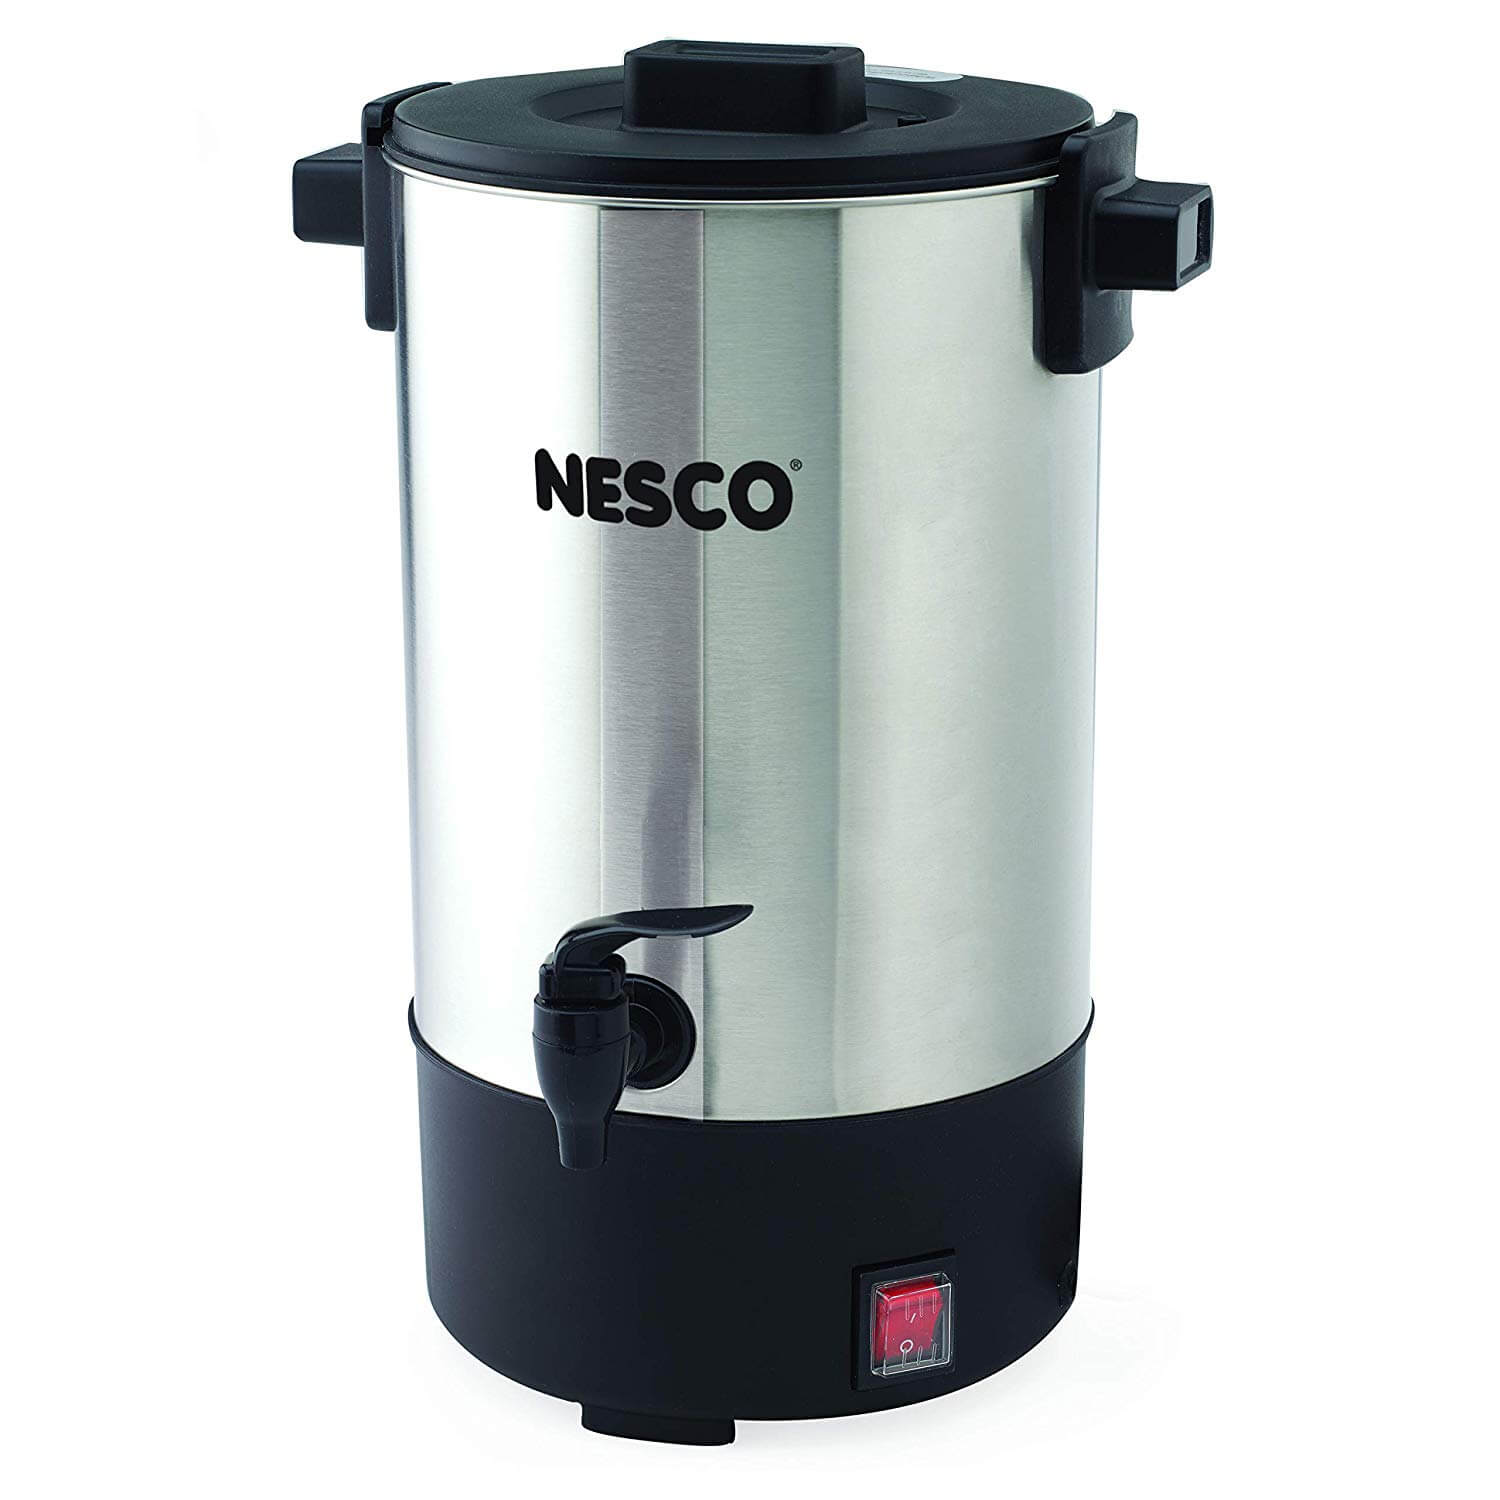 Nesco CU-25 Professional Coffee Urn